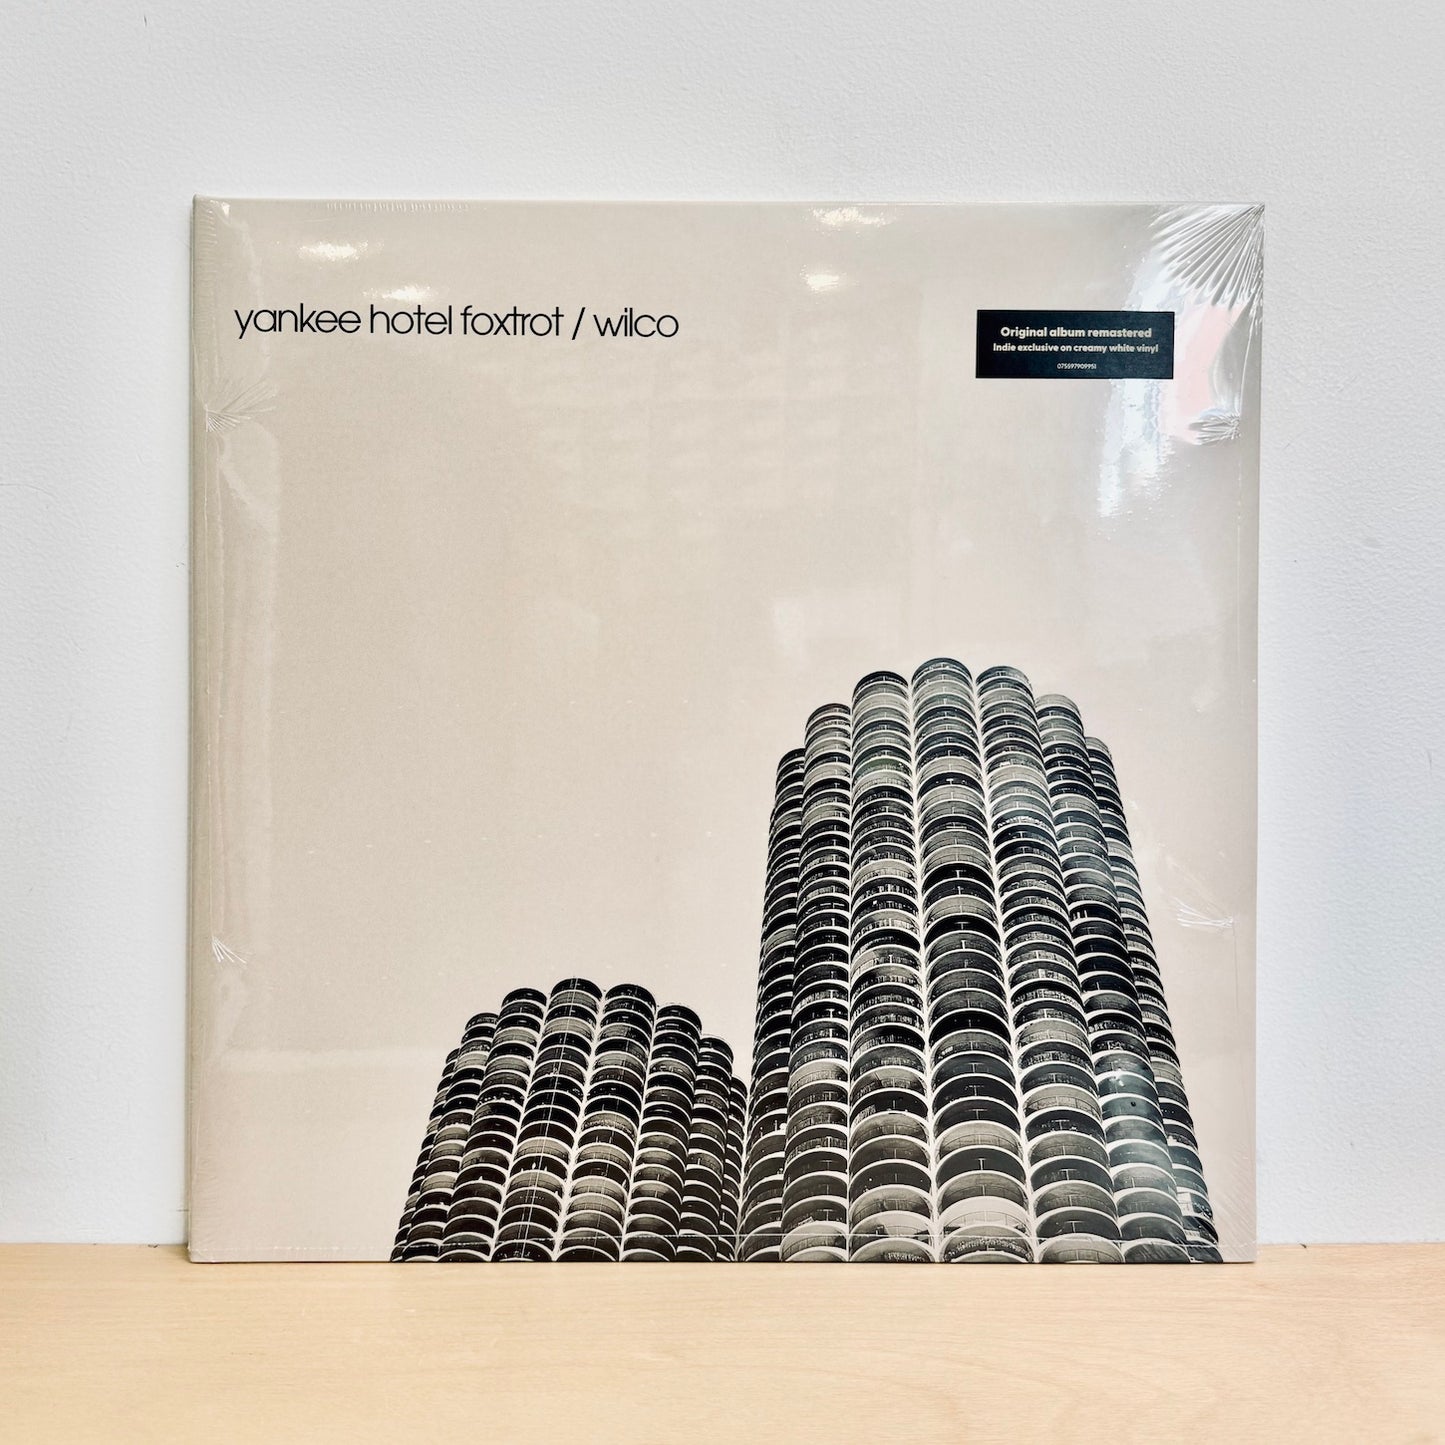 Wilco - Yankee Hotel Foxtrot. 2LP (Indie Exclusive 140g White Vinyl)